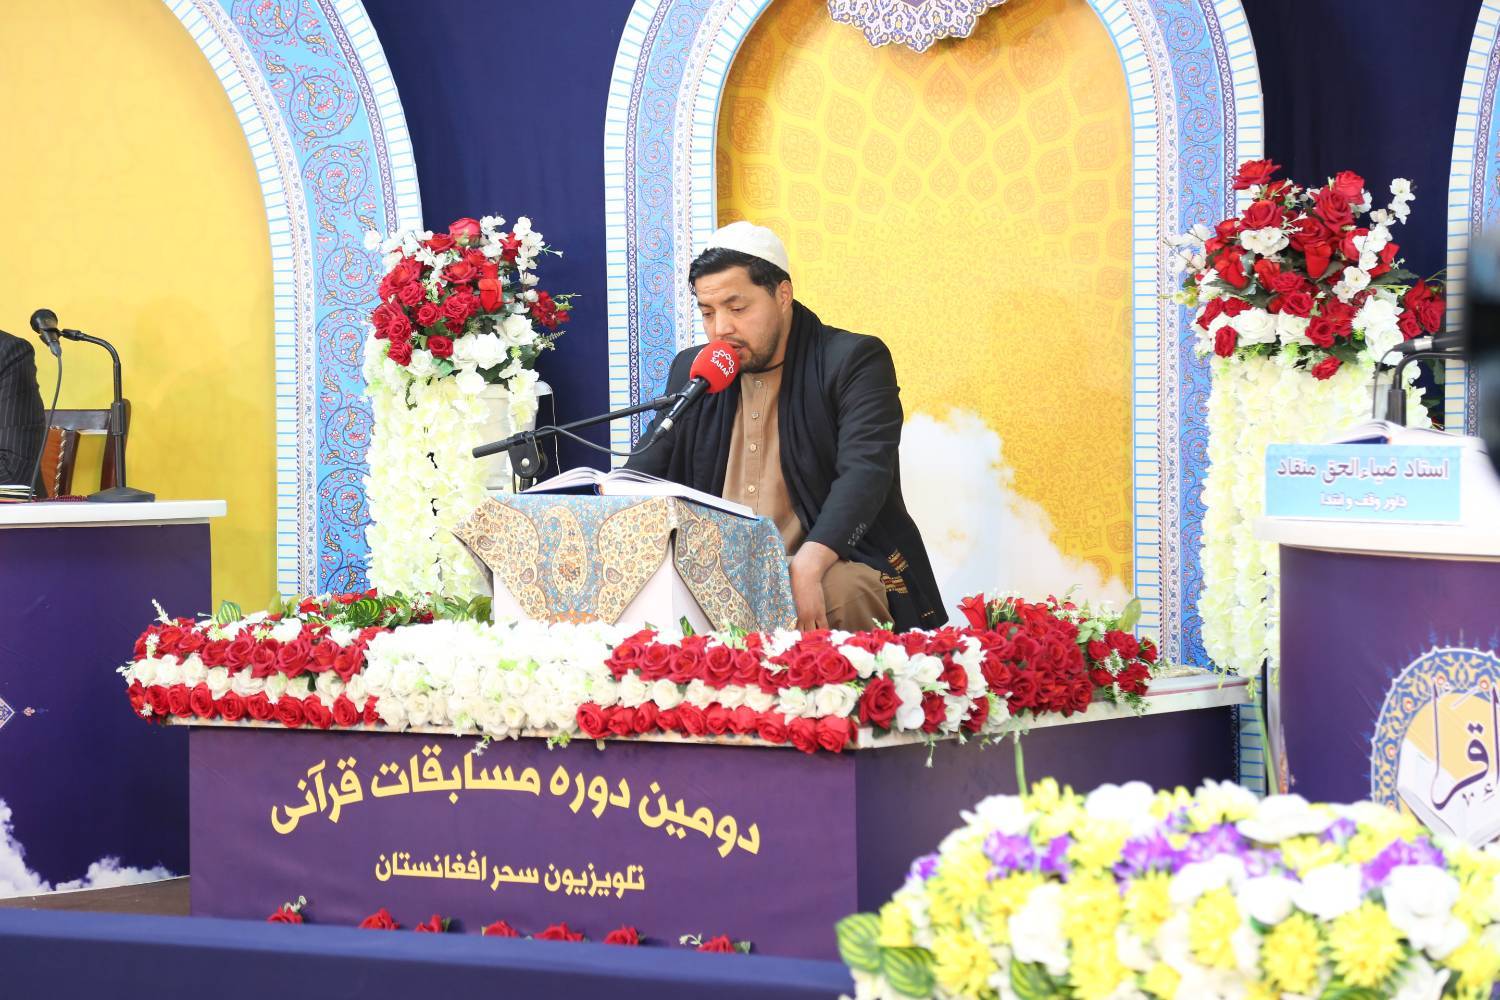 تنظيم النسخة الثانية من مسابقة "إقرأ" القرآنية في أفغانستان